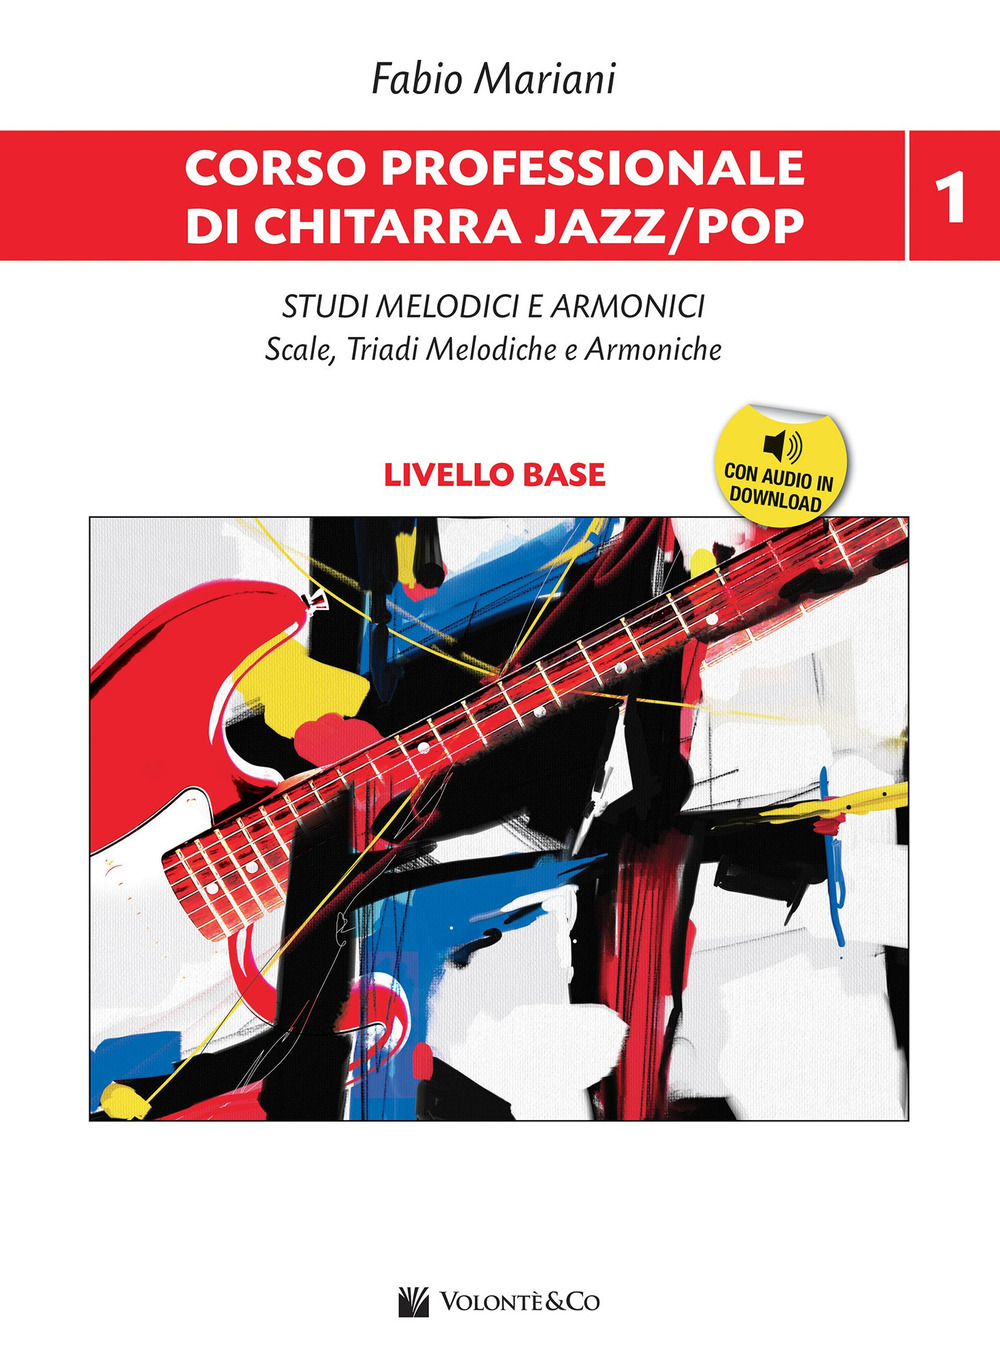 Corso professionale di chitarra jazz/pop. Con Audio in download. Vol. 1: Studi melodici e armonici. Scale, triadi melodiche e armoniche